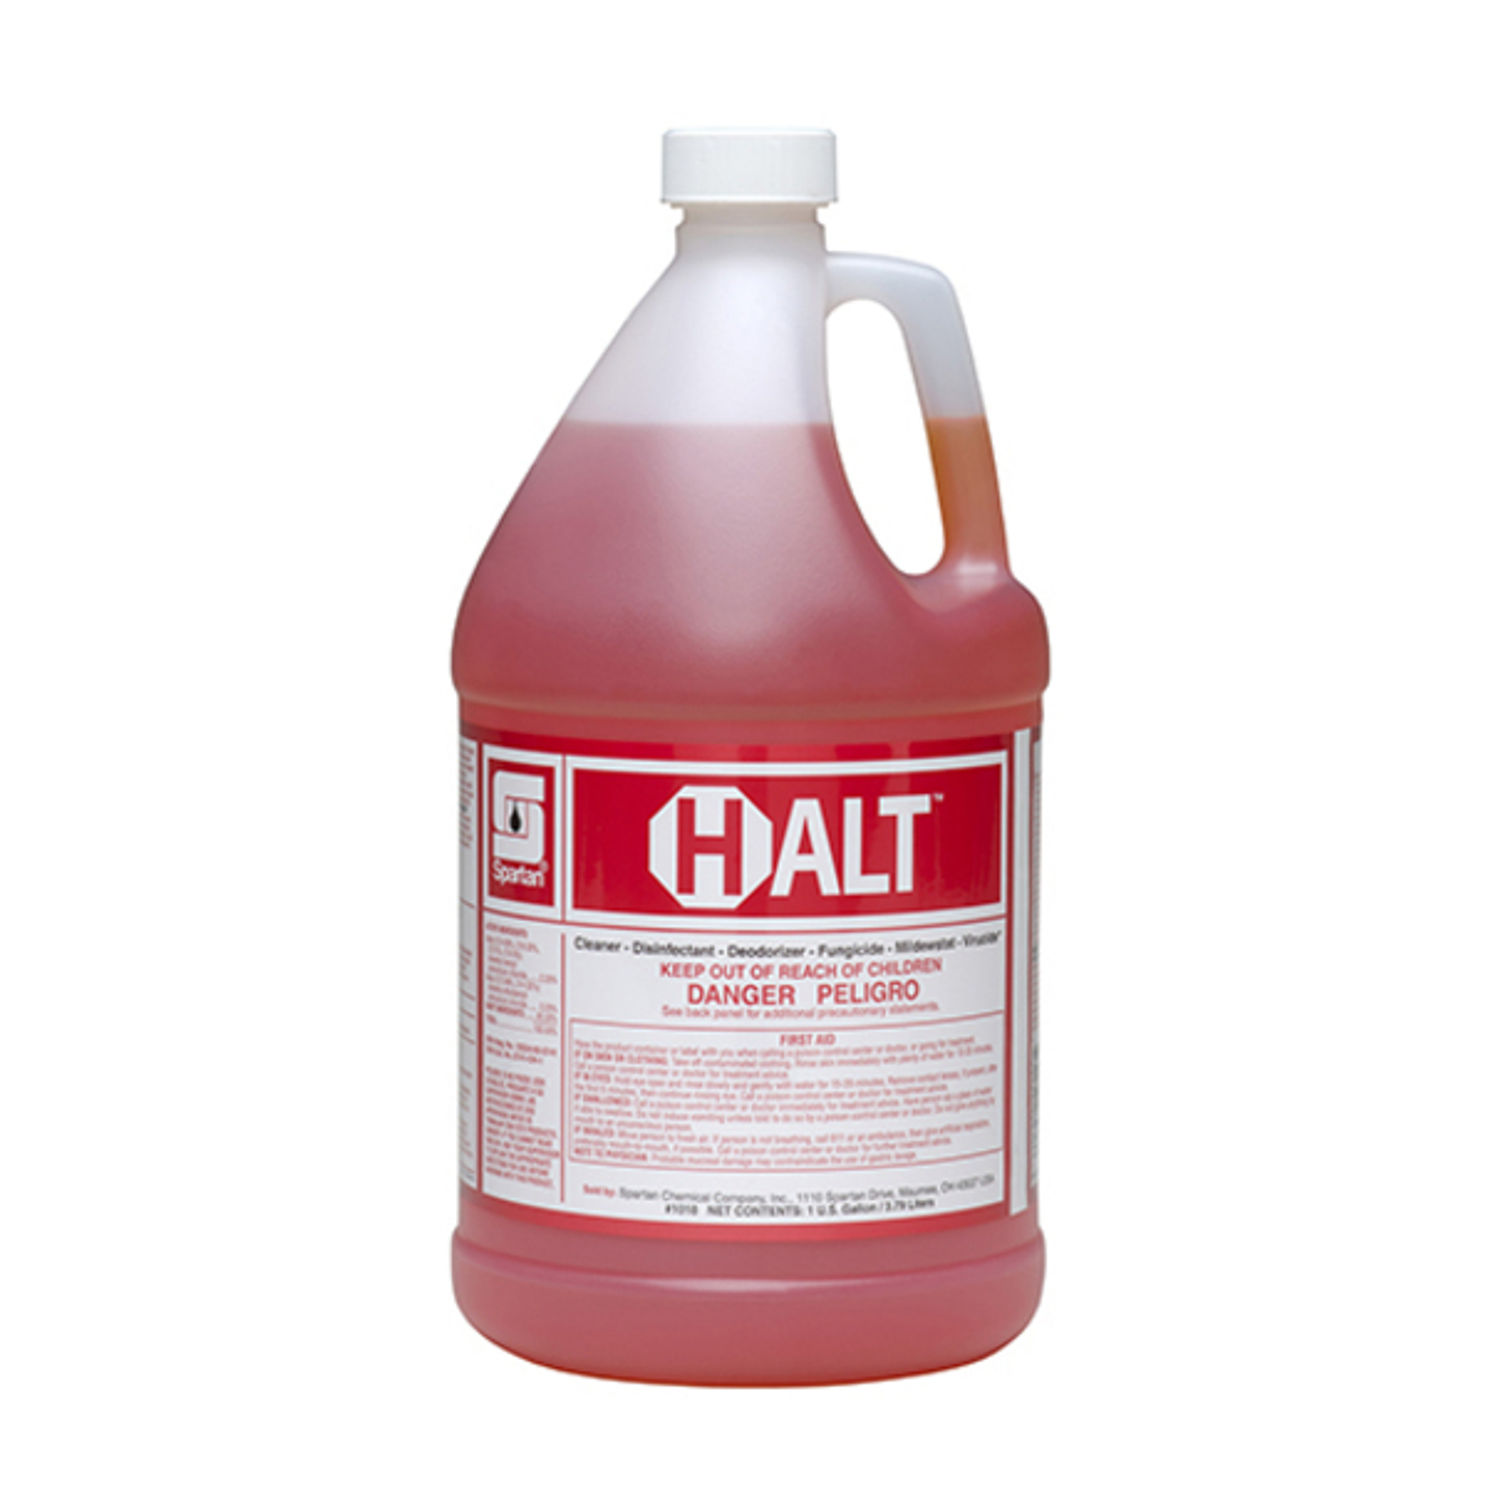 Halt Cleaner and Disinfectant 1 gallon, Liquid, 128 fl oz (4 quart), Fresh Scent, 4 / Case, Orange